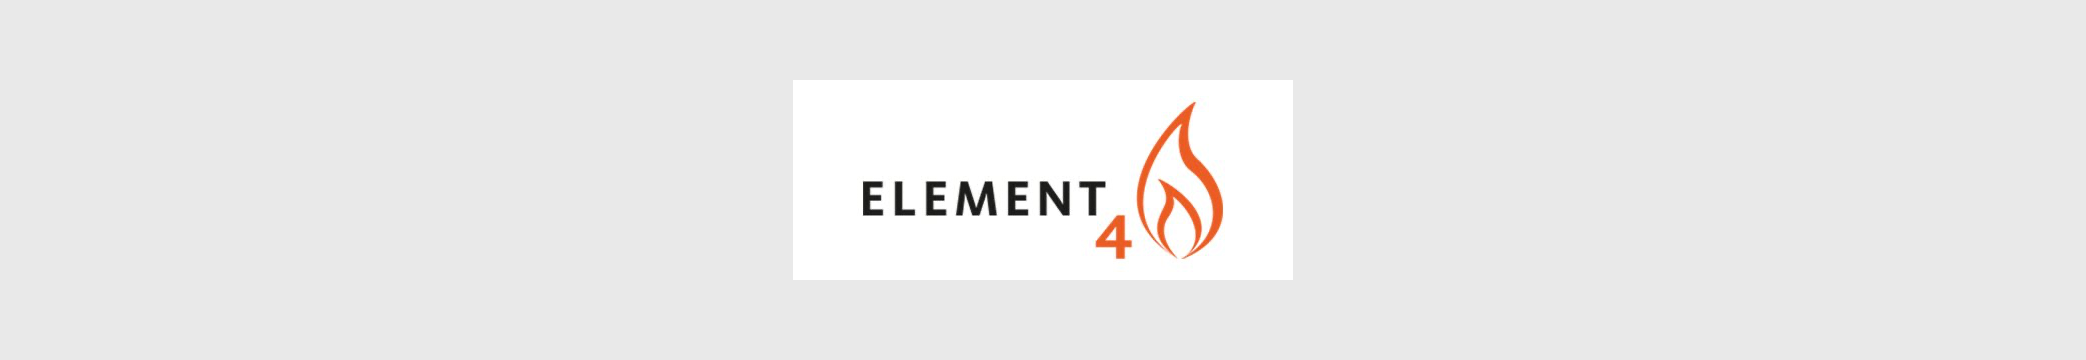 Header_Element-4